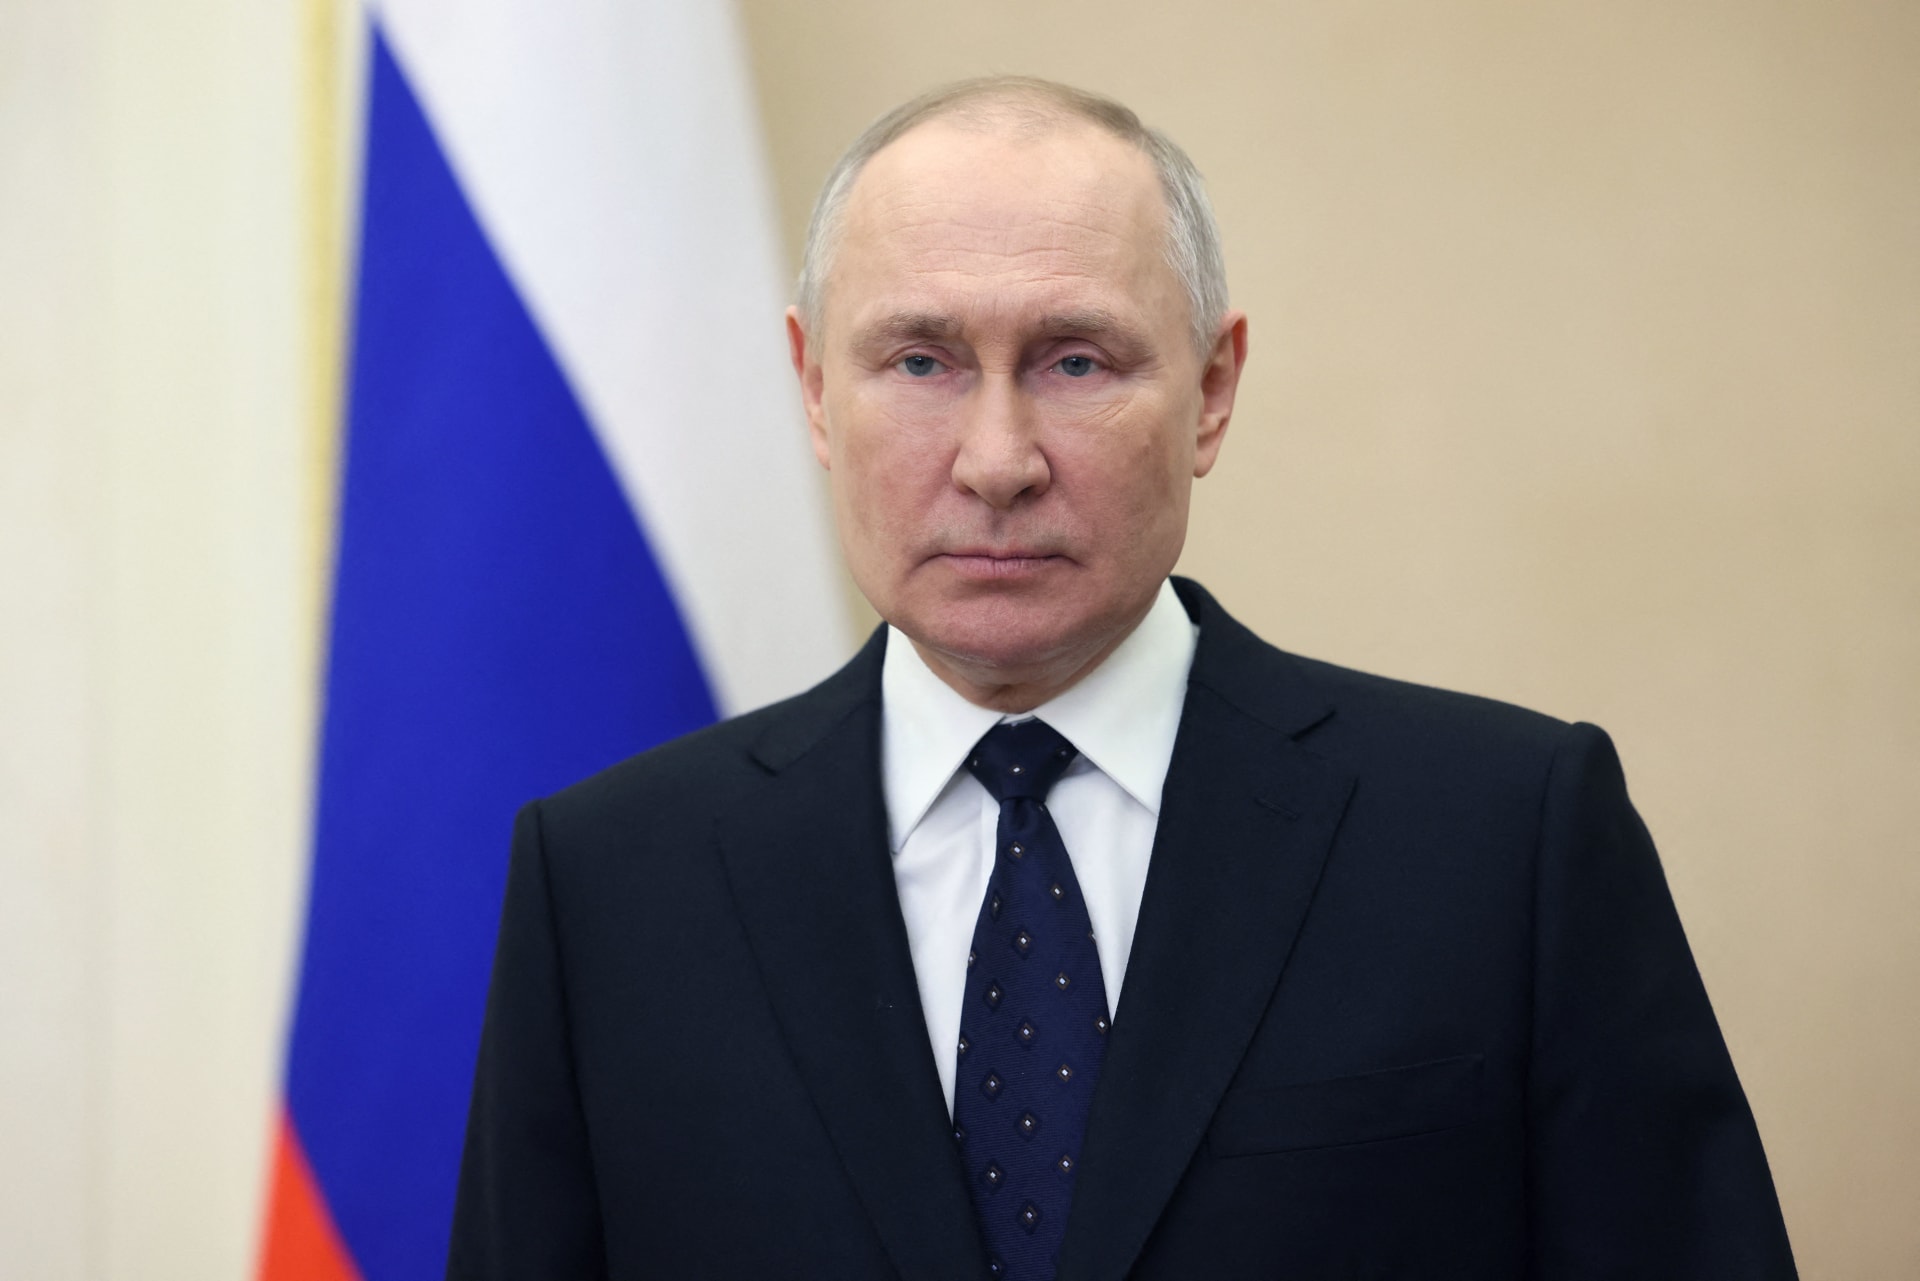 بوتين يتهم الغرب بمحاولة تصفية روسيا وتدميرها